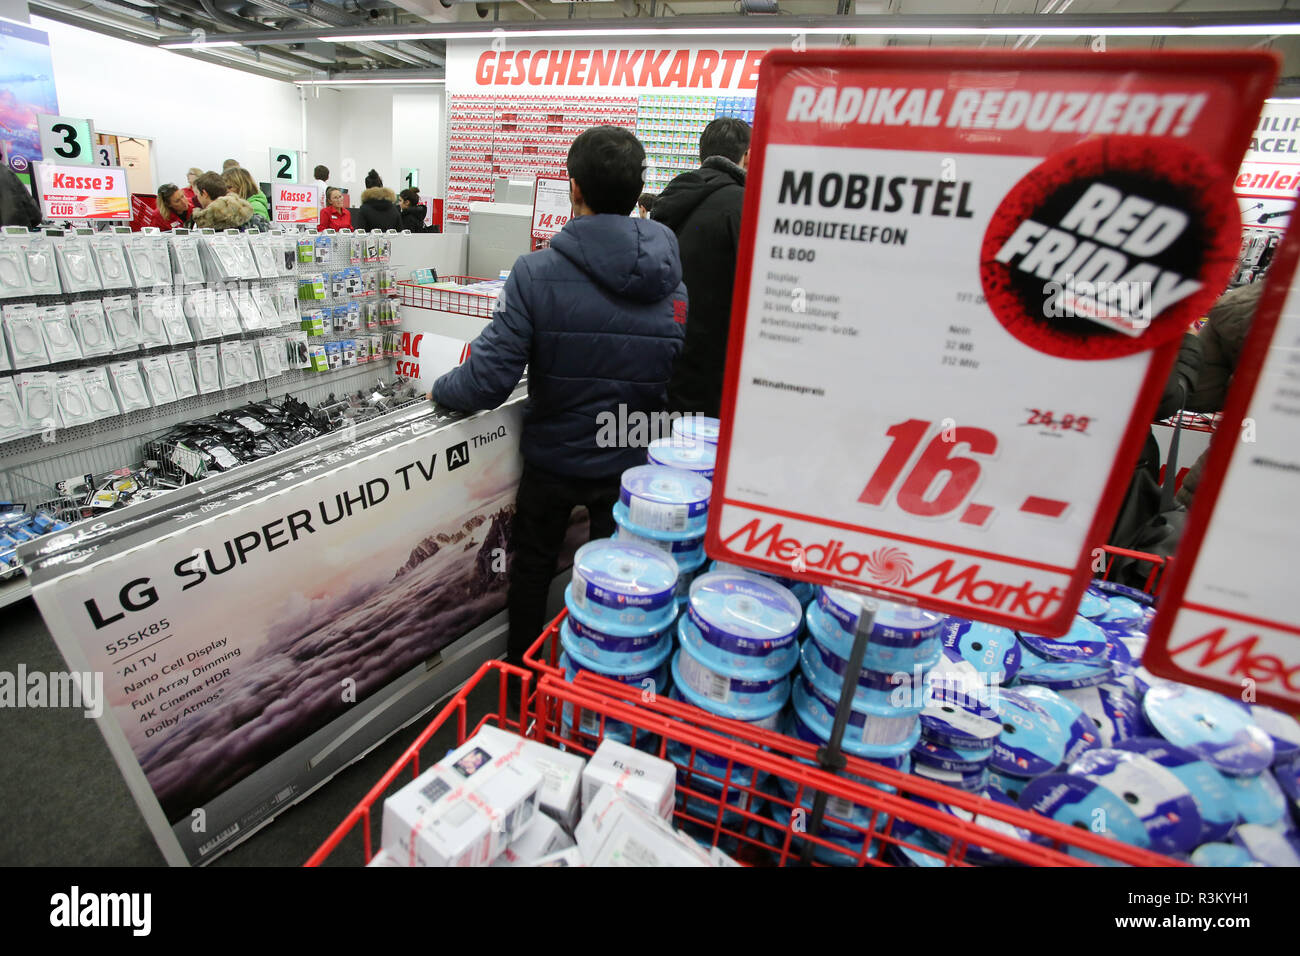 23 de noviembre de 2018, en Hamburgo: el "Viernes Negro" día de descuento  en una tienda, los clientes Media Markt cola en los mostradores de las  cajas. Según las estimaciones de la